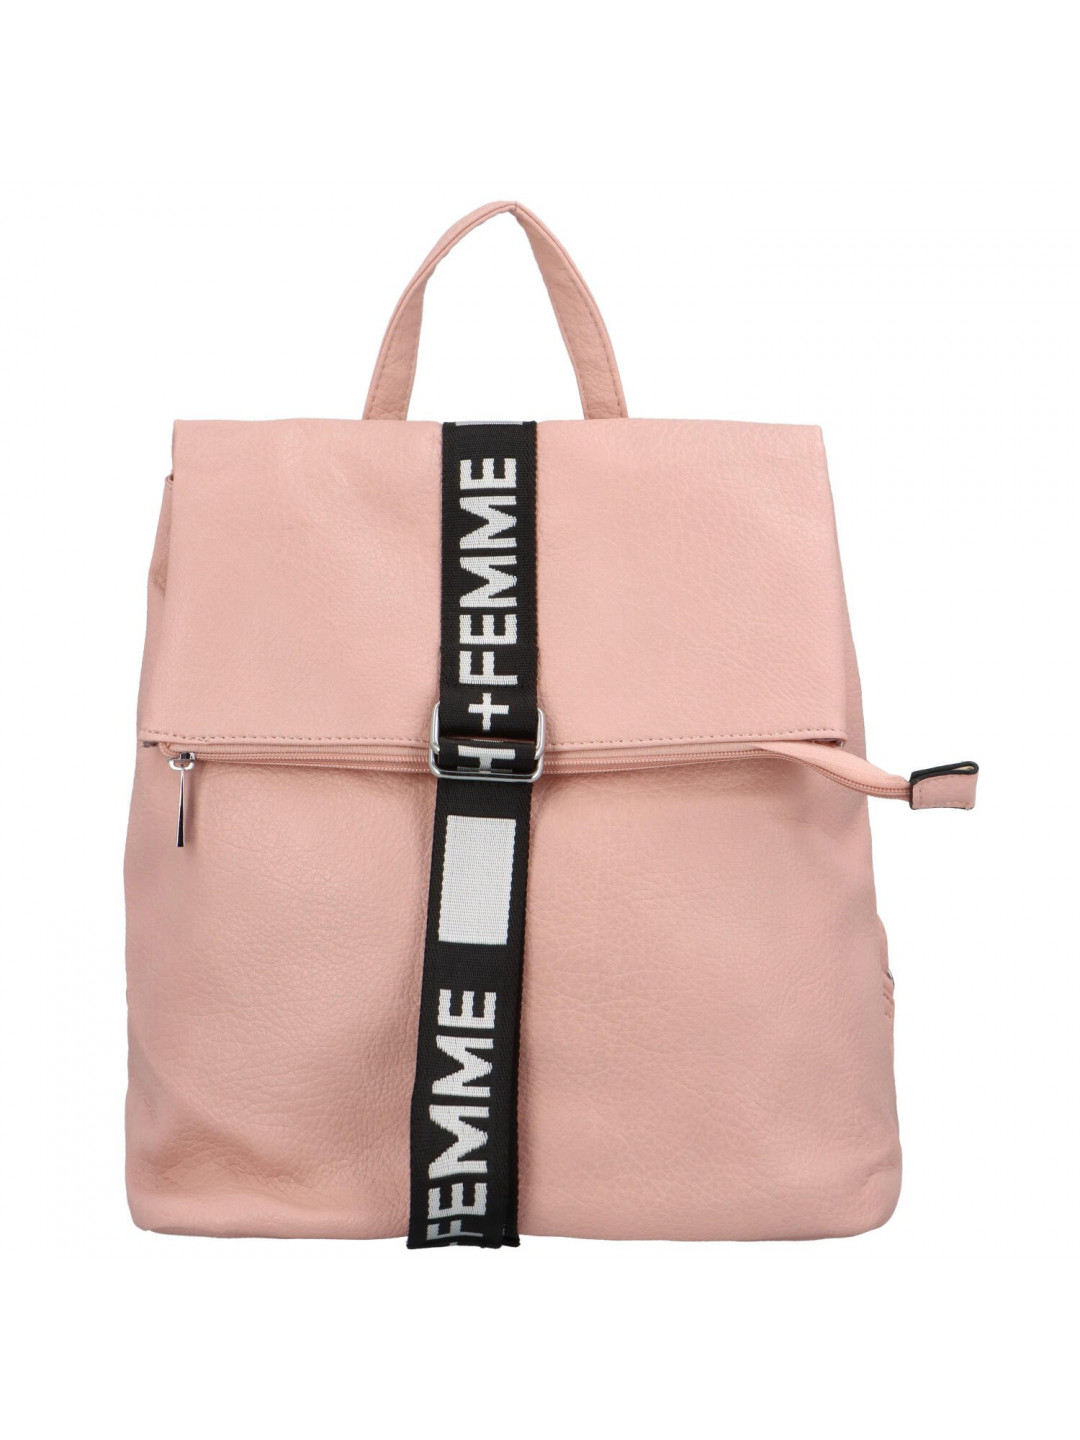 Trendový dámský koženkový batoh Pelias pastelově růžová